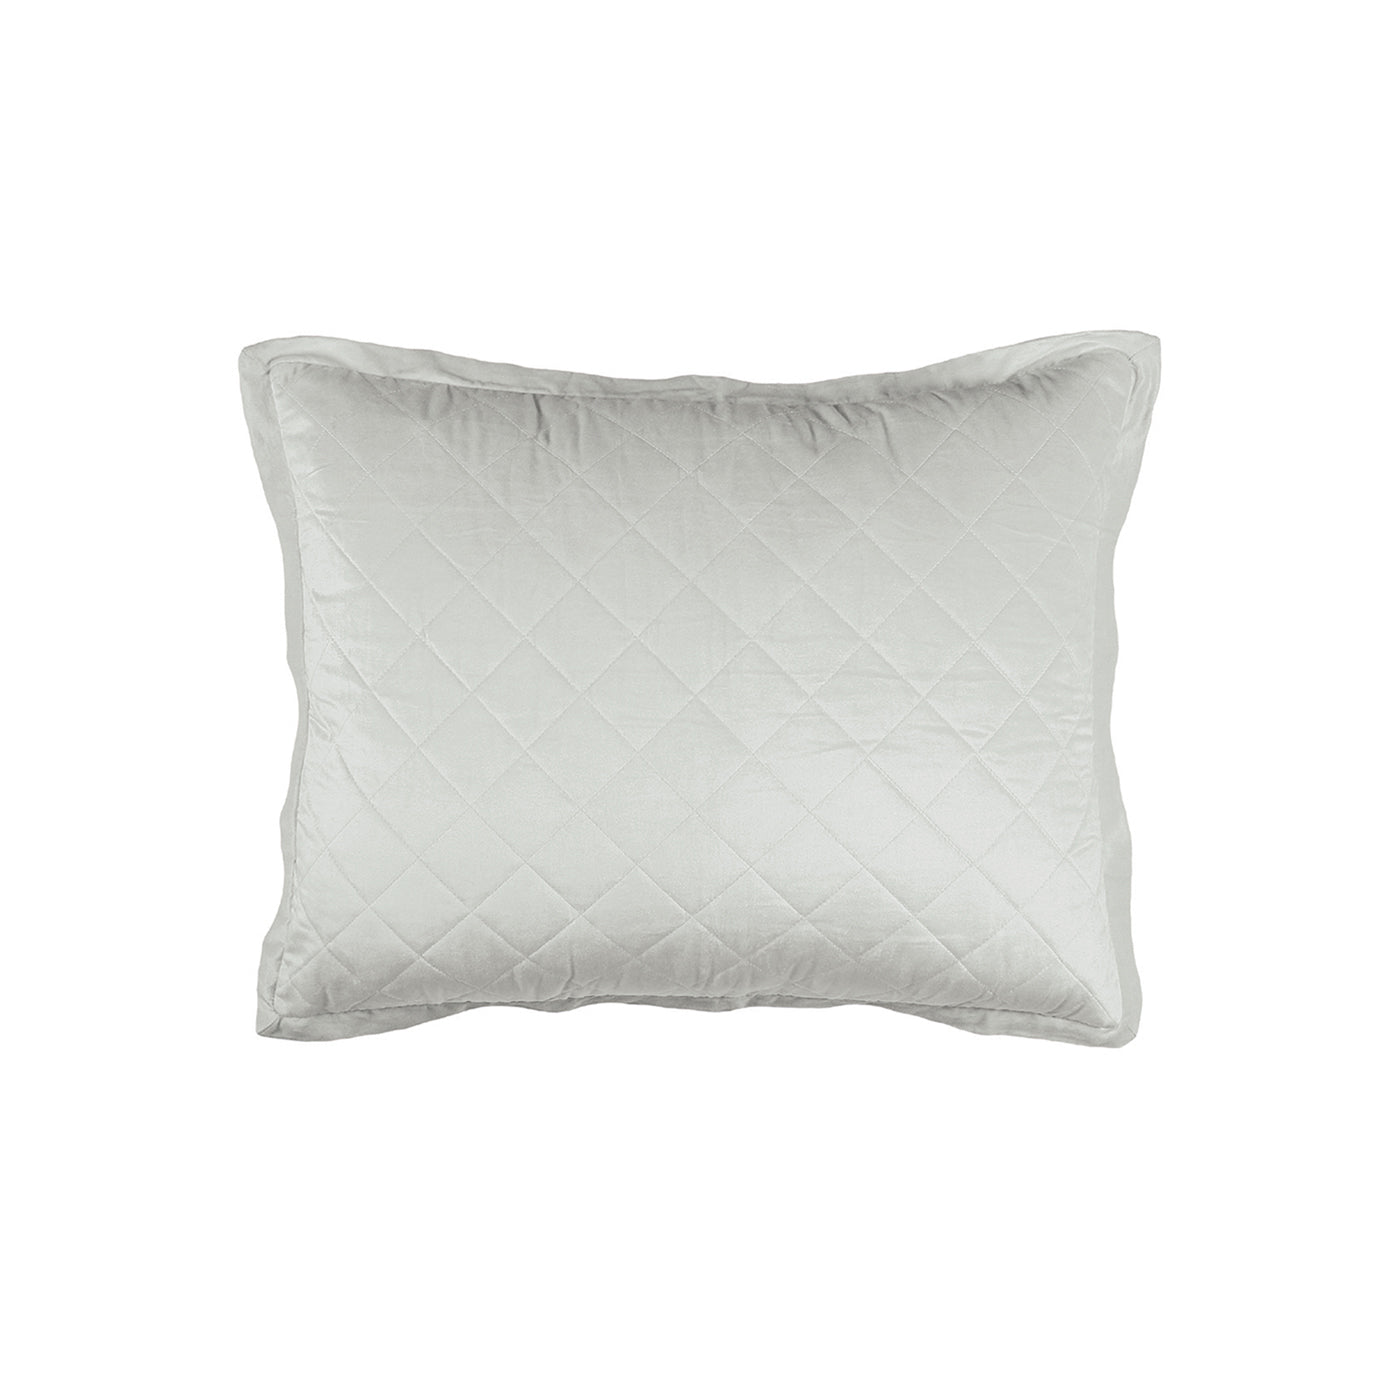 Chloe Standard Pillow Sham Celadon Velvet 20X26 (No Insert)